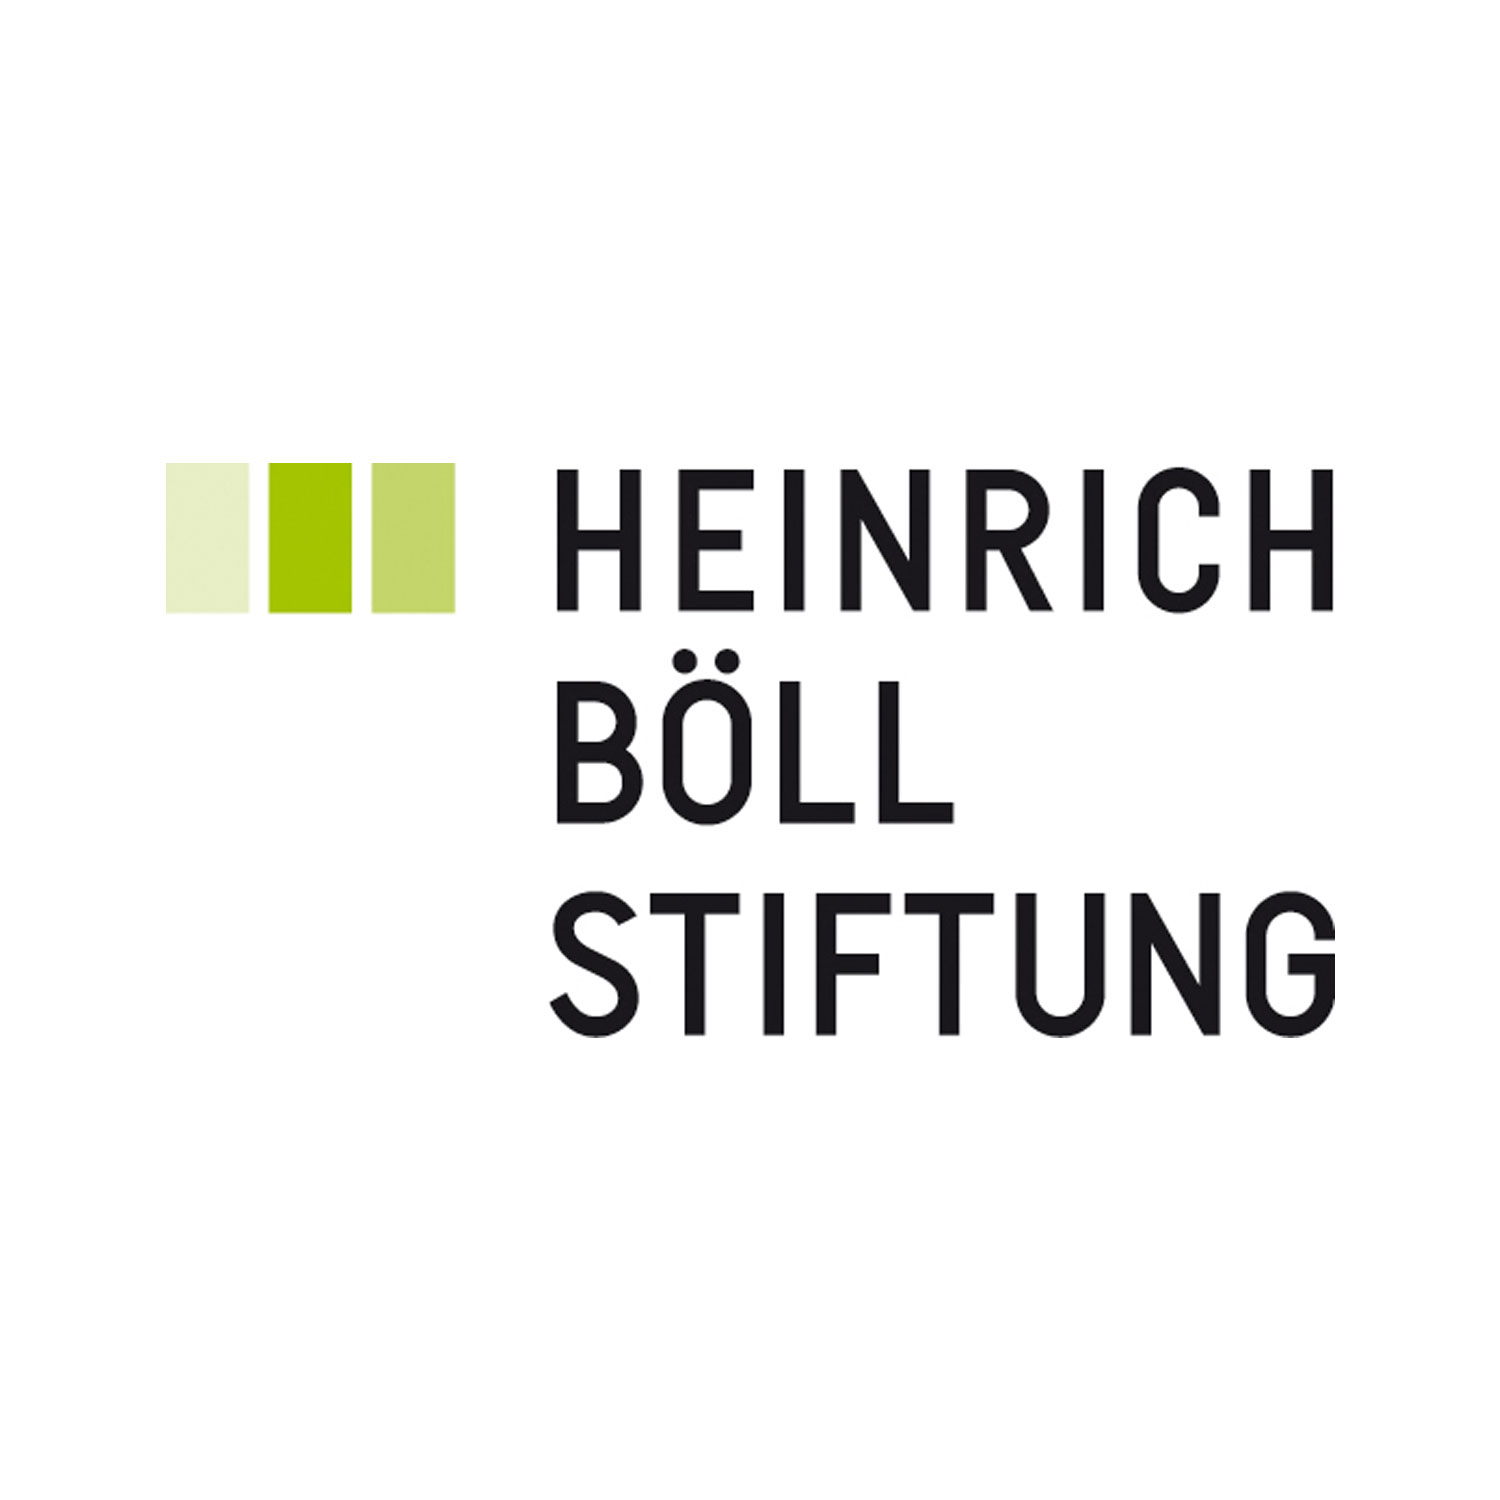 Heinrich Boll Stiftung Foundation 